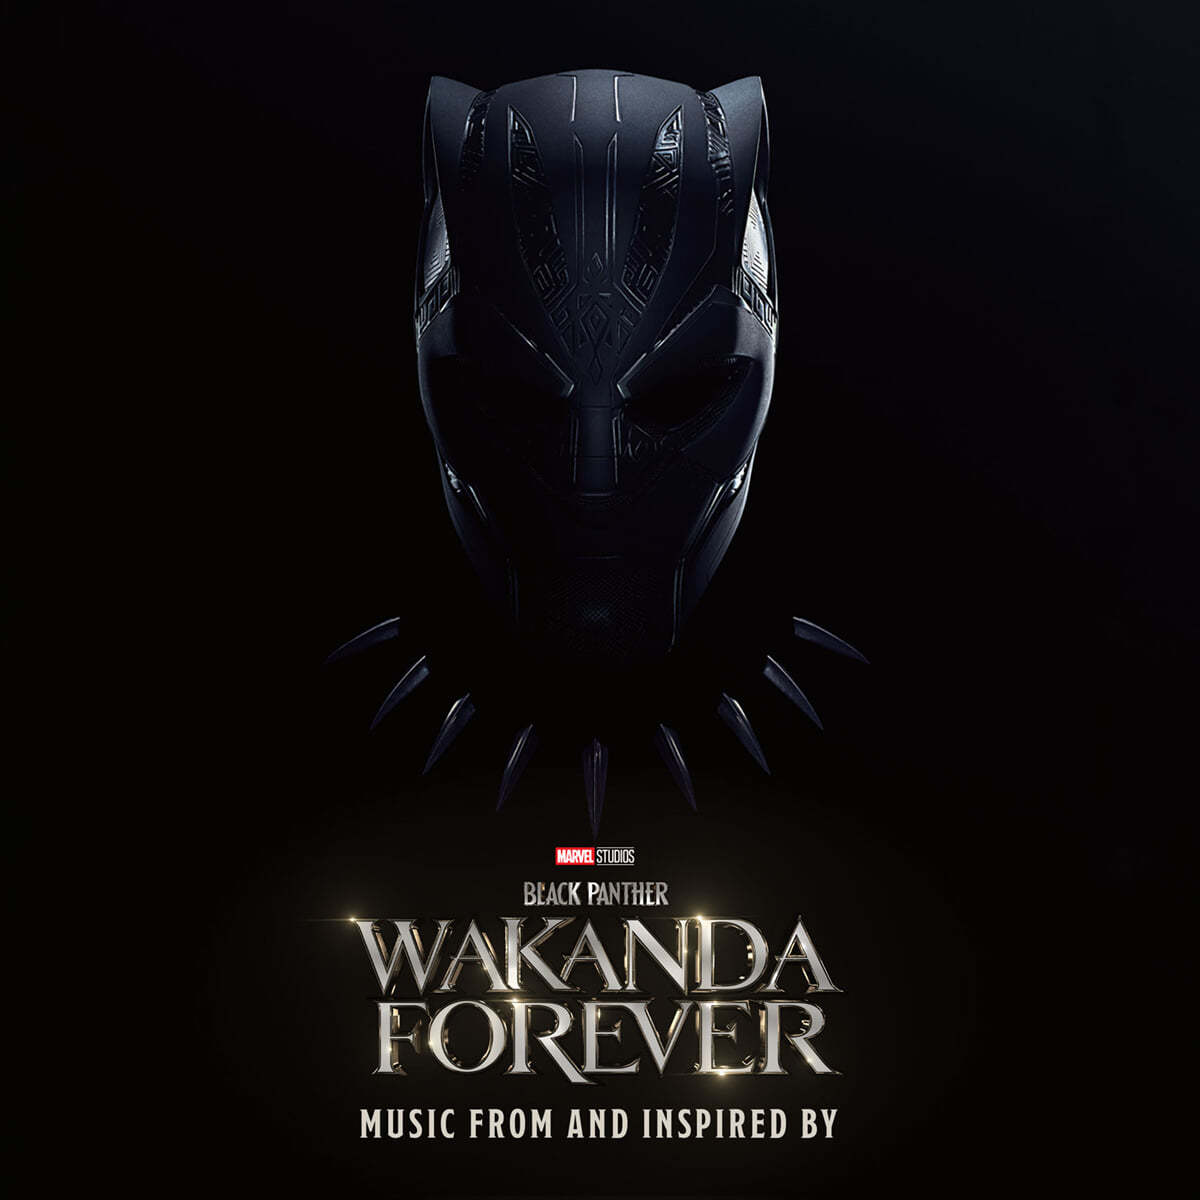 블랙팬서: 와칸다 포에버 영화음악 (Black Panther: Wakanda Forever Music From and Inspired By)